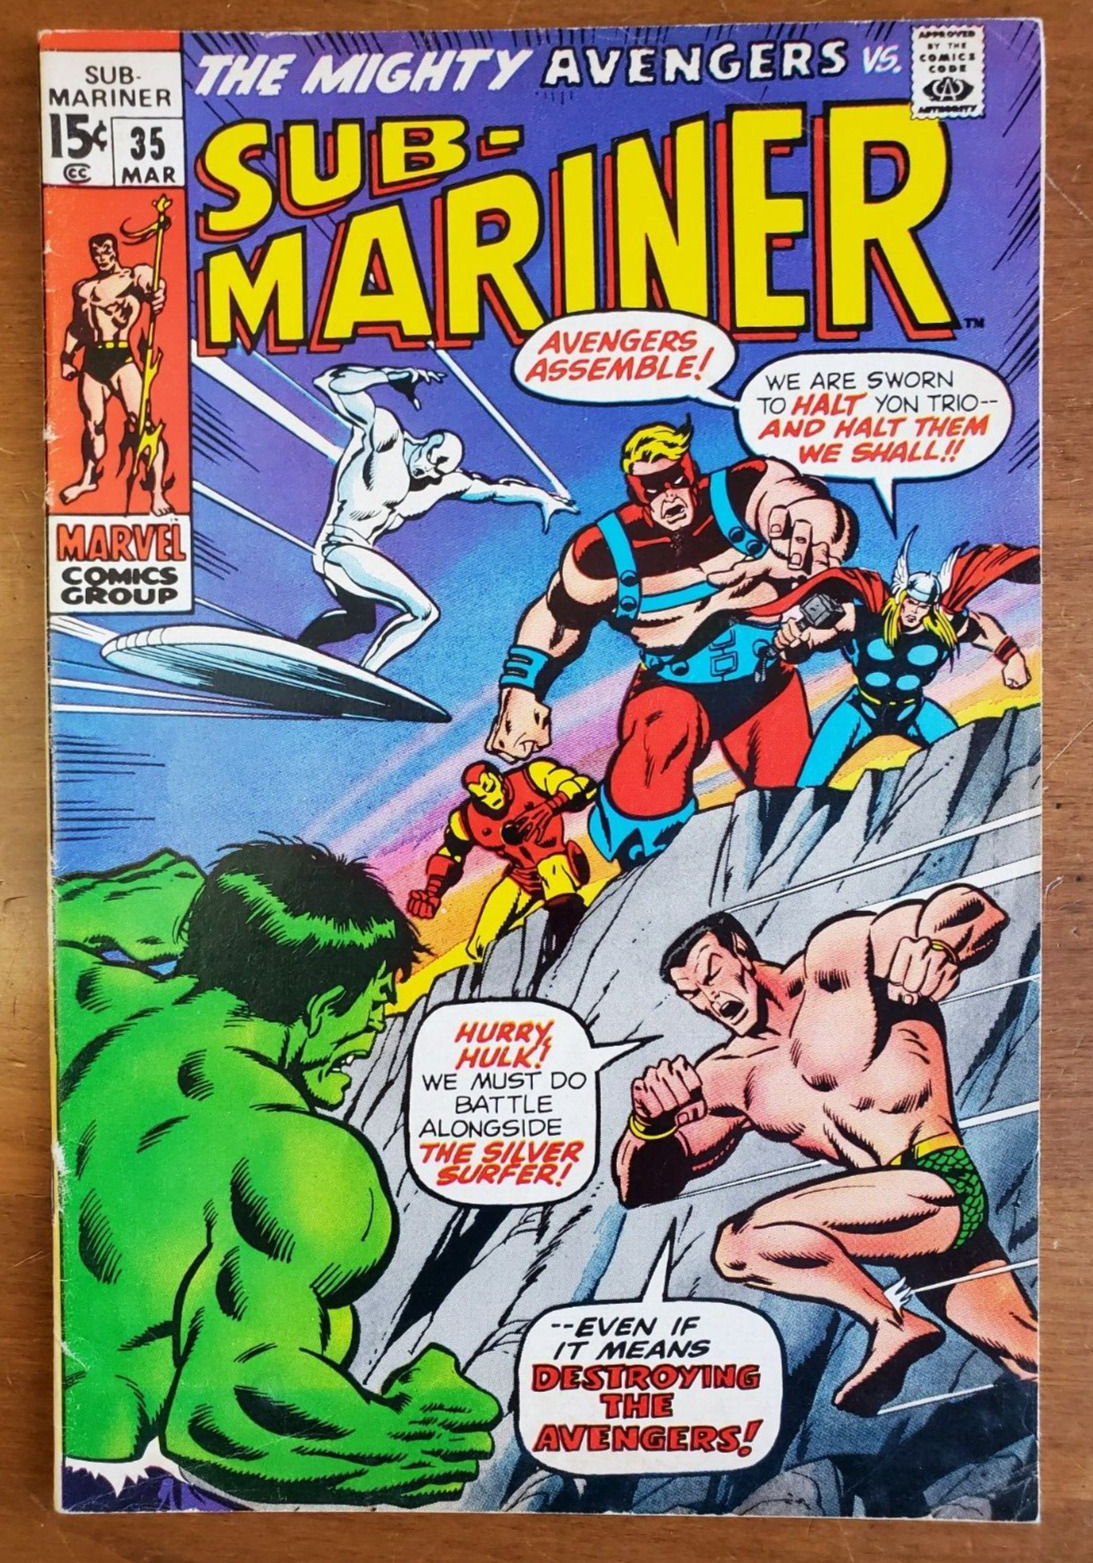 SUB-MARINER #35 (1971). VG/F range. Defenders vs. Avengers Bronze Age Marvel